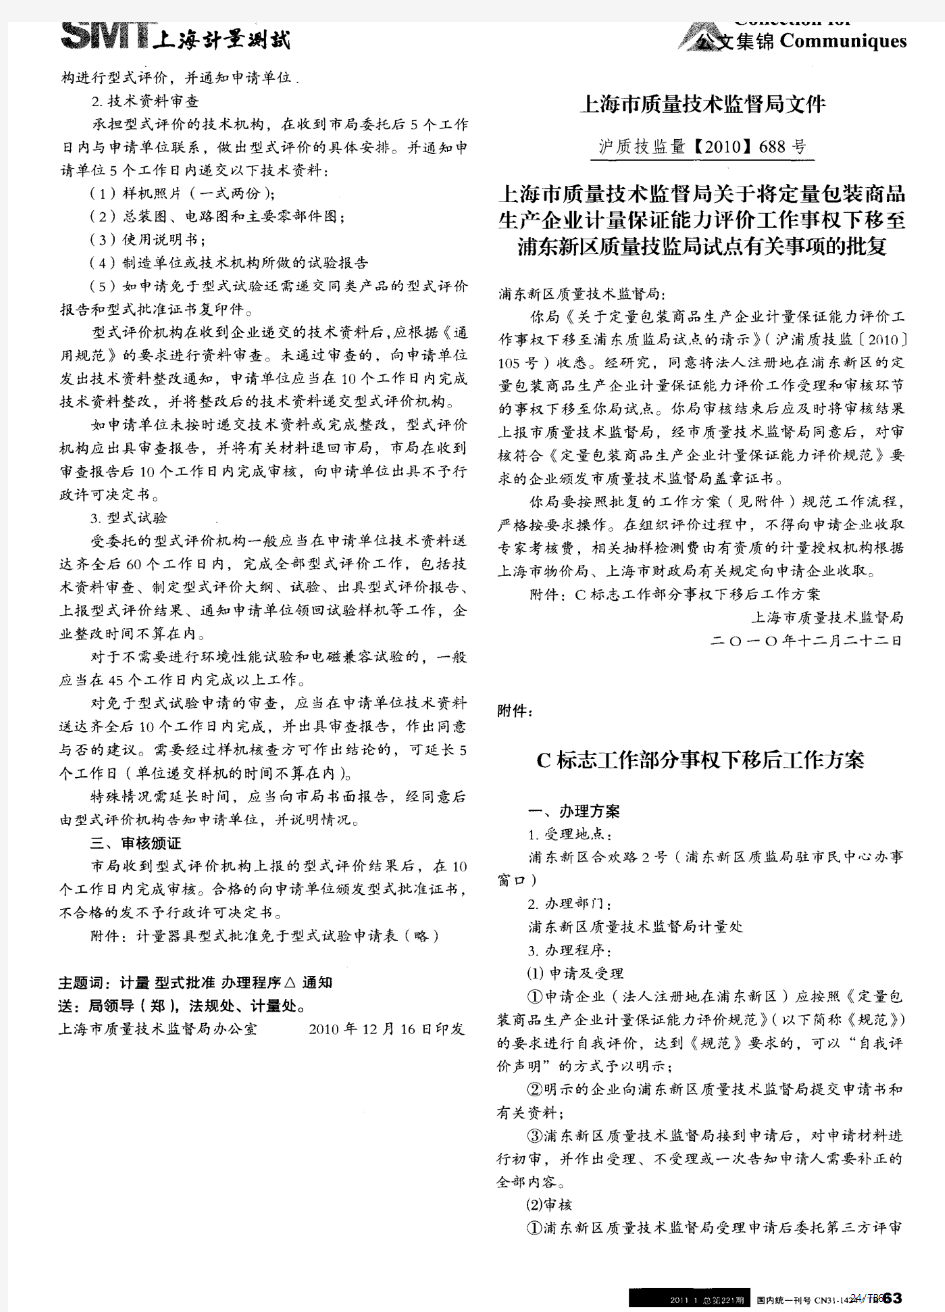 上海市质量技术监督局关于发布《上海市计量器具型式批准办理程序》的通知